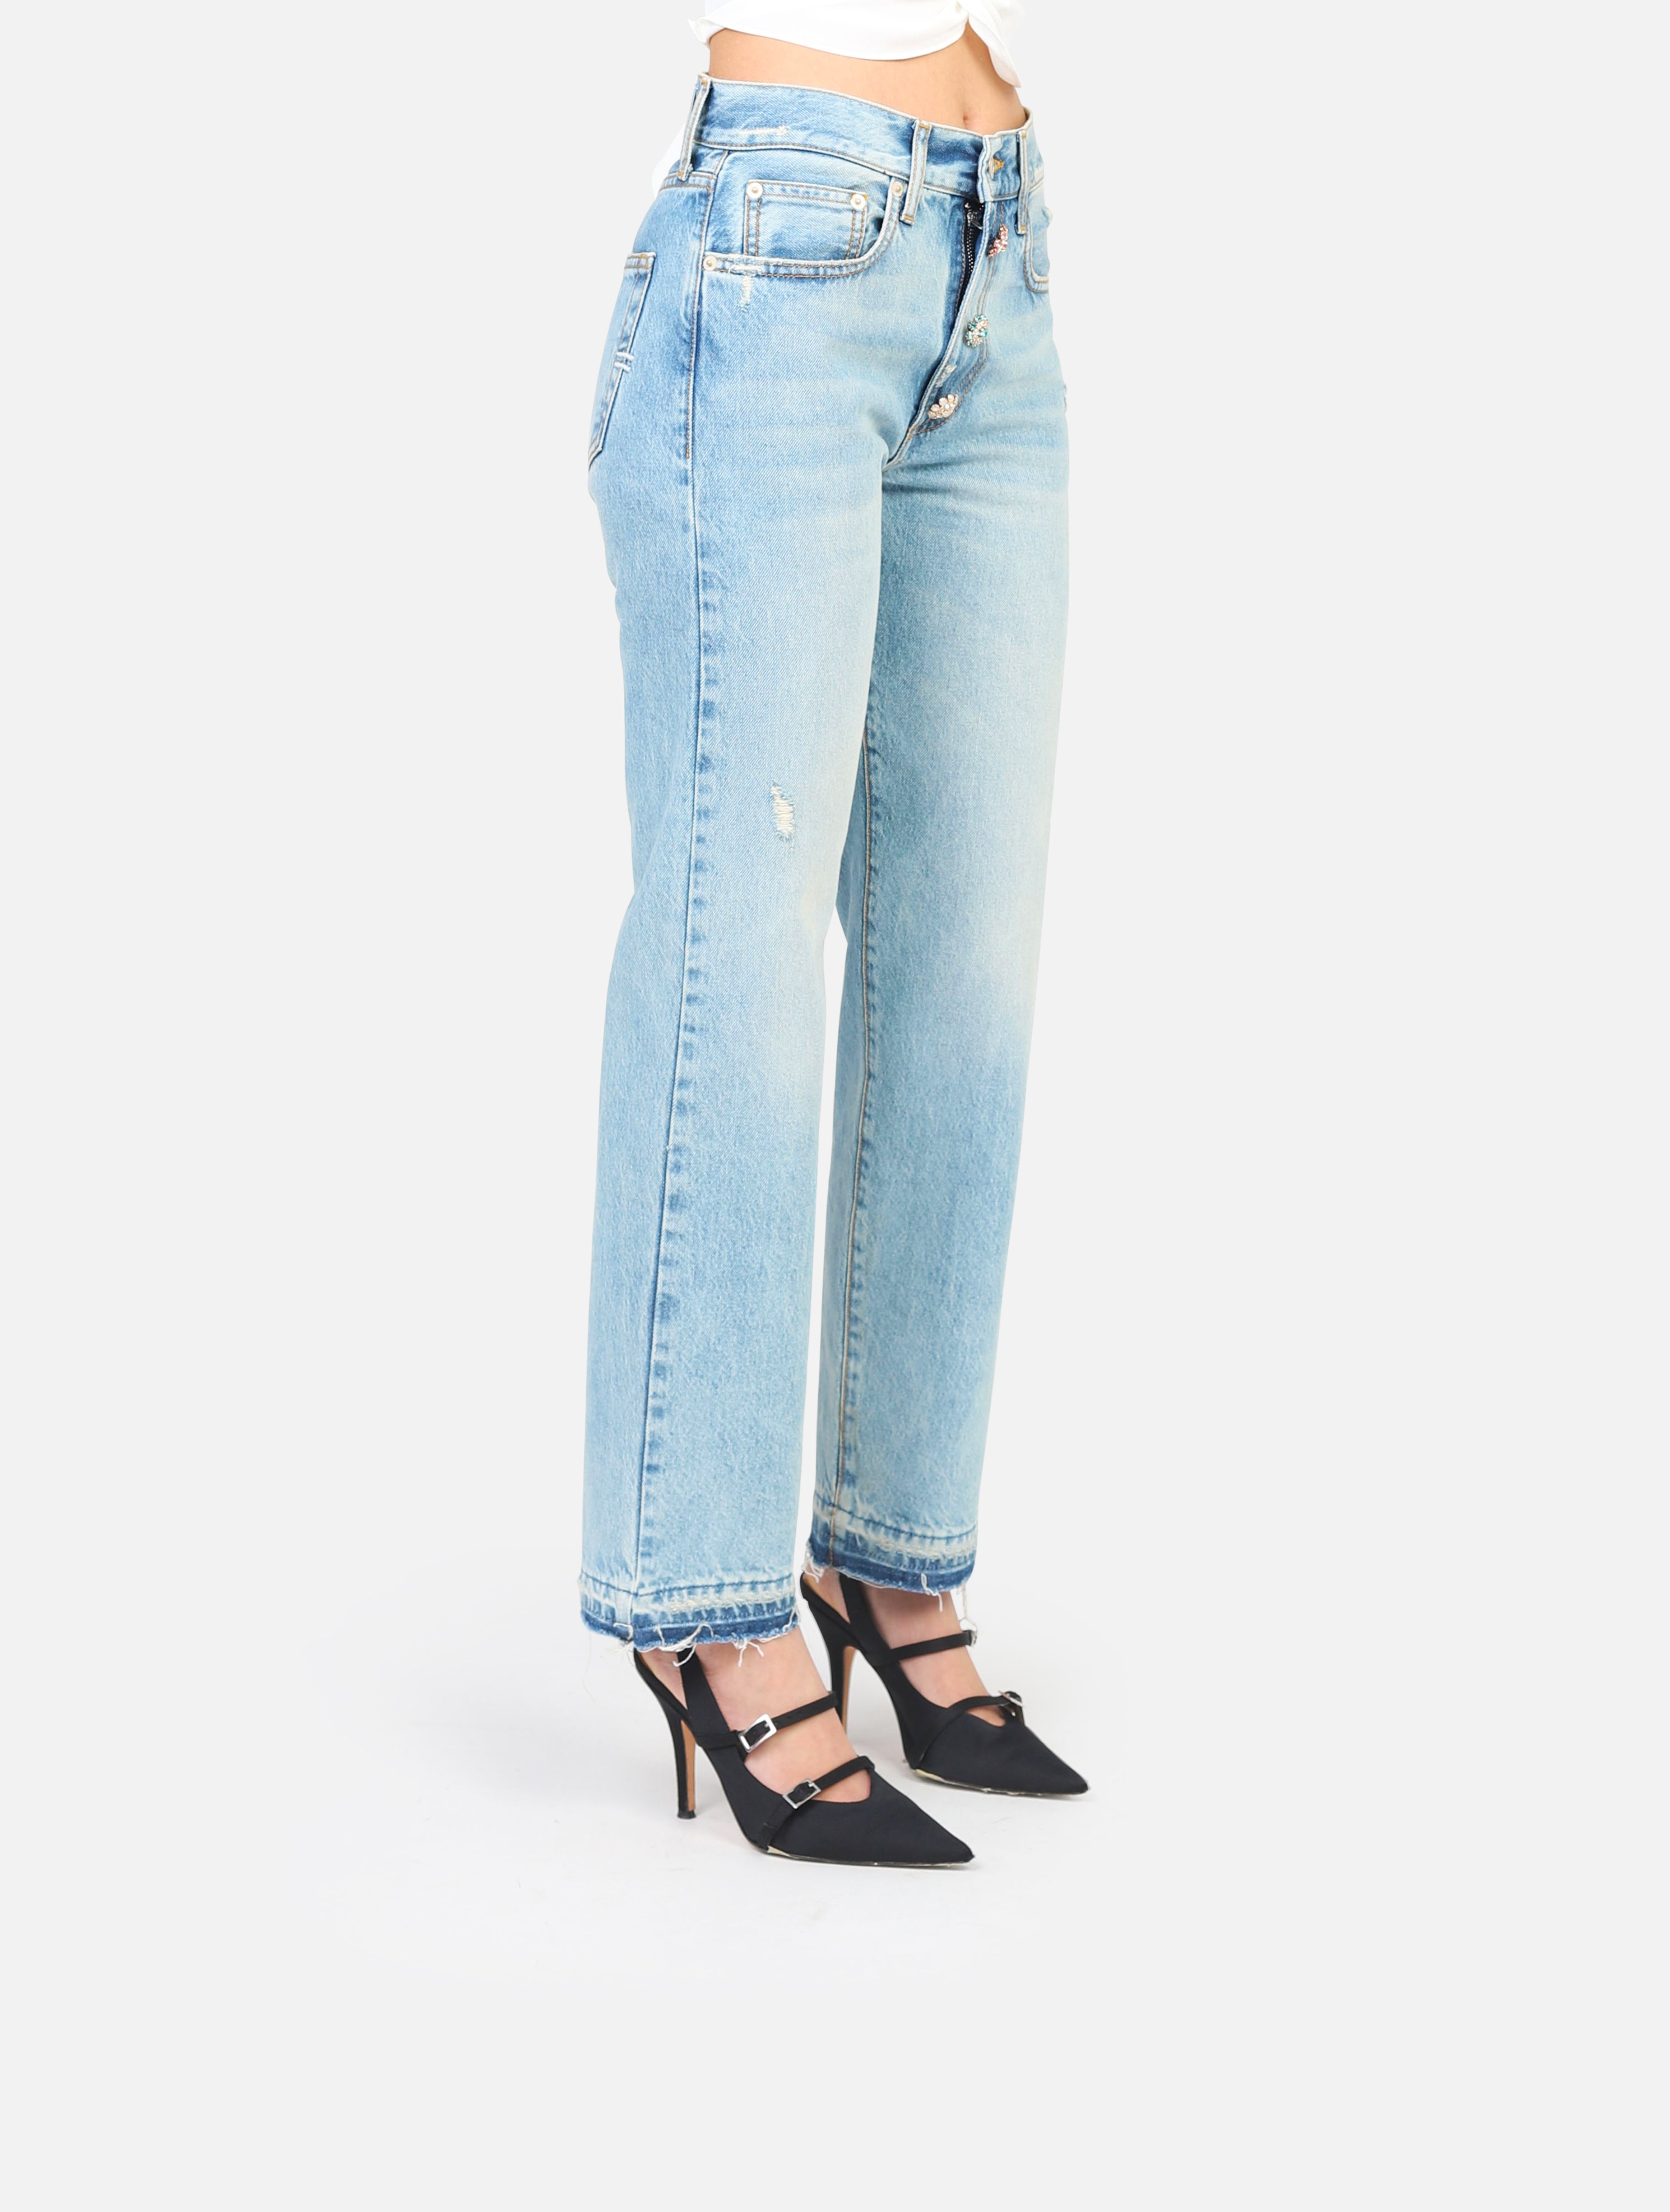 Vicolo jeans -  denim woman  - 2